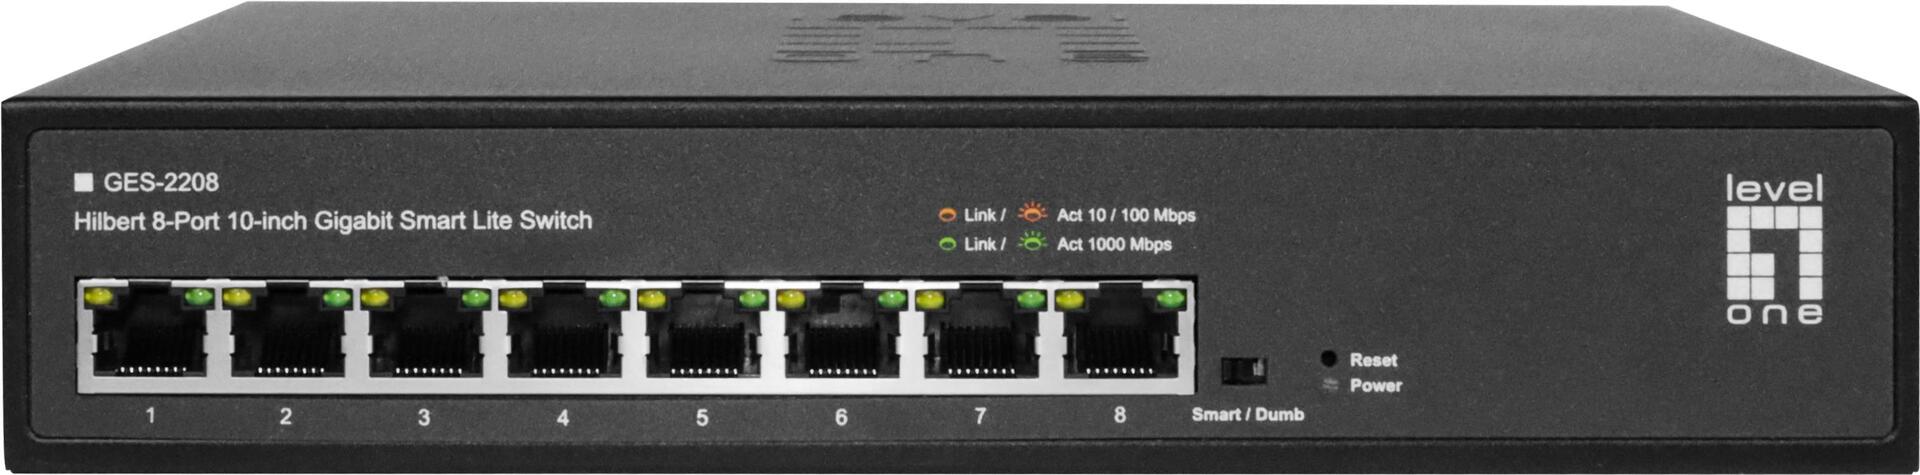 LevelOne GES-2208 Netzwerk-Switch Managed L2 Gigabit Ethernet (10/100/1000) Schwarz (GES-2208)